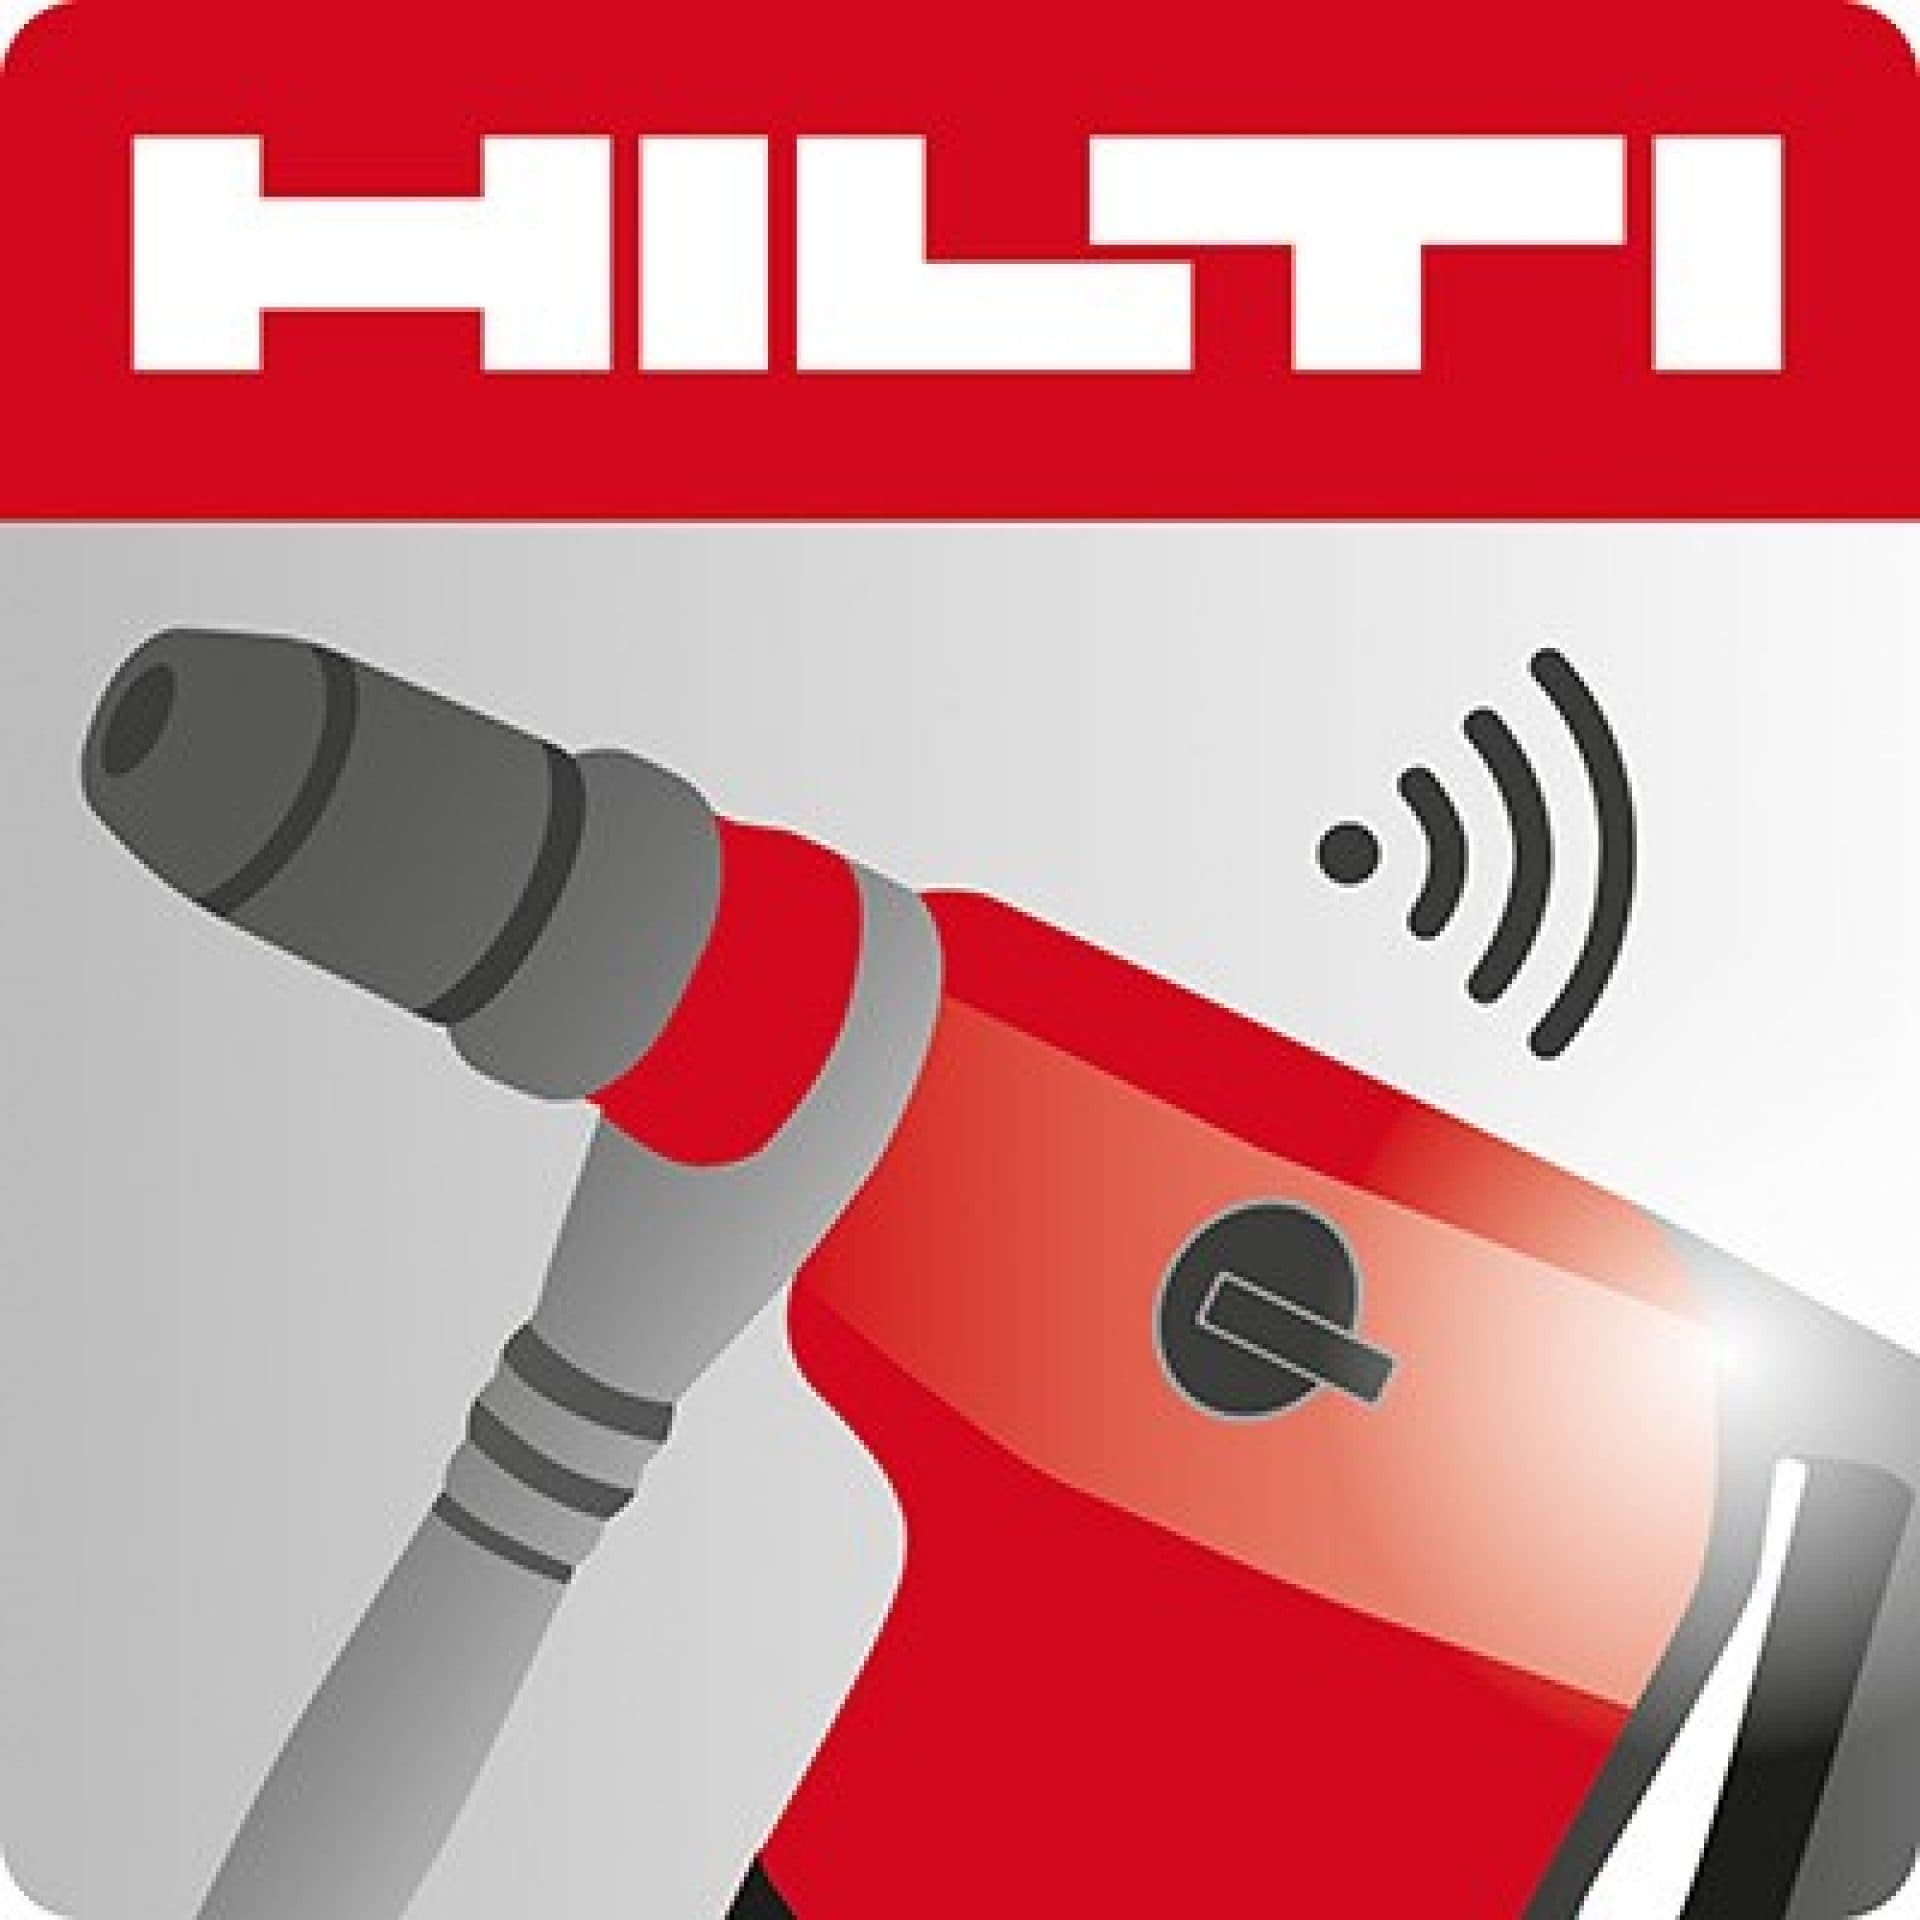 Téléchargez l'application mobile Hilti Connect 